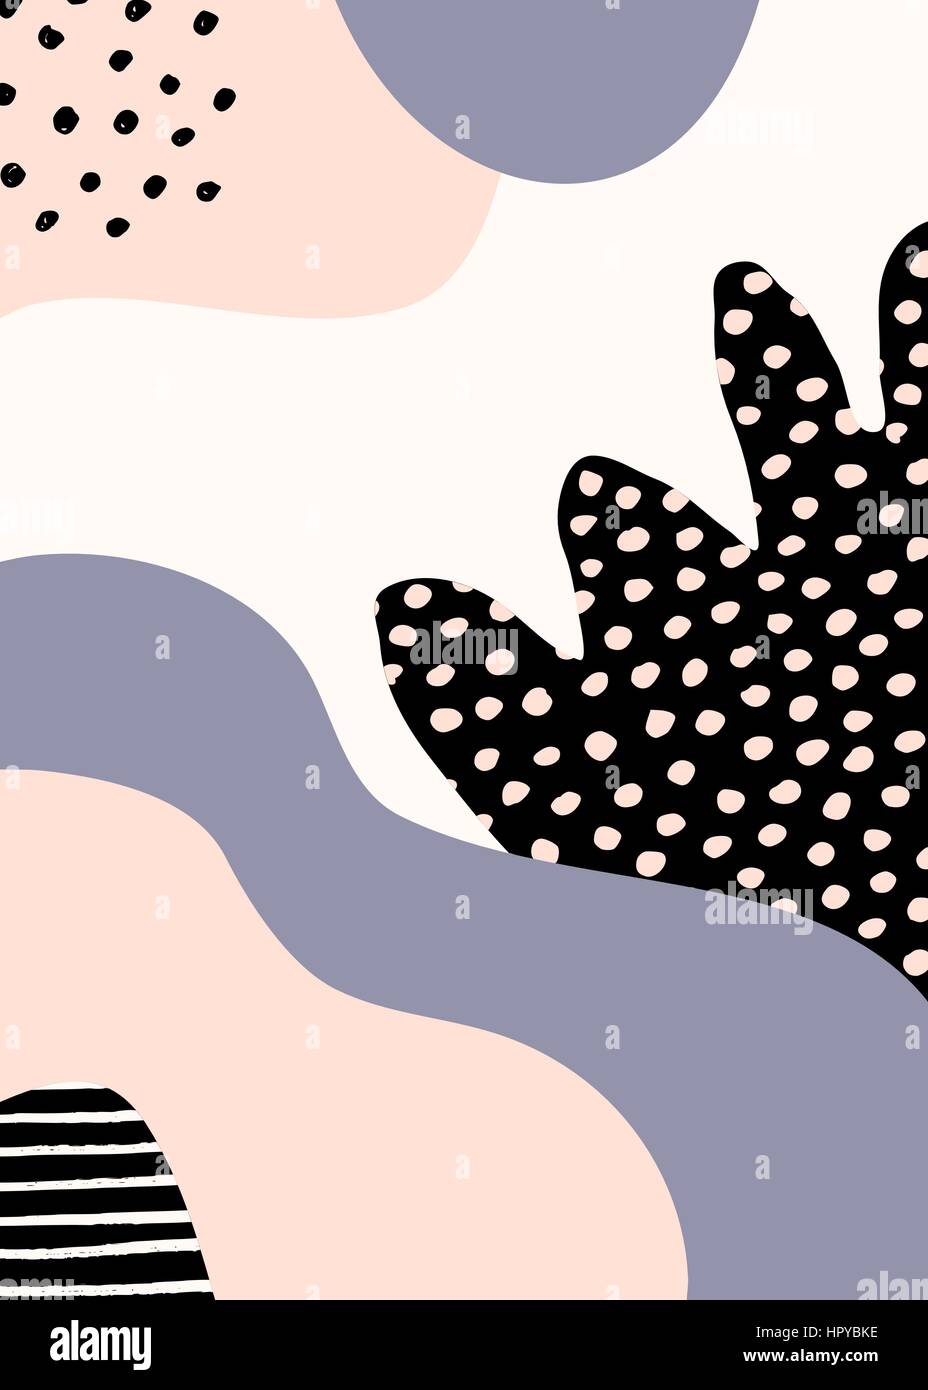 Collage Stildesign mit abstrakten und organische Formen in Pastell rosa, Lavendel-lila, schwarz und Creme. Abstrakte Textil, Geschenkpapier, Wandkunst. Stock Vektor